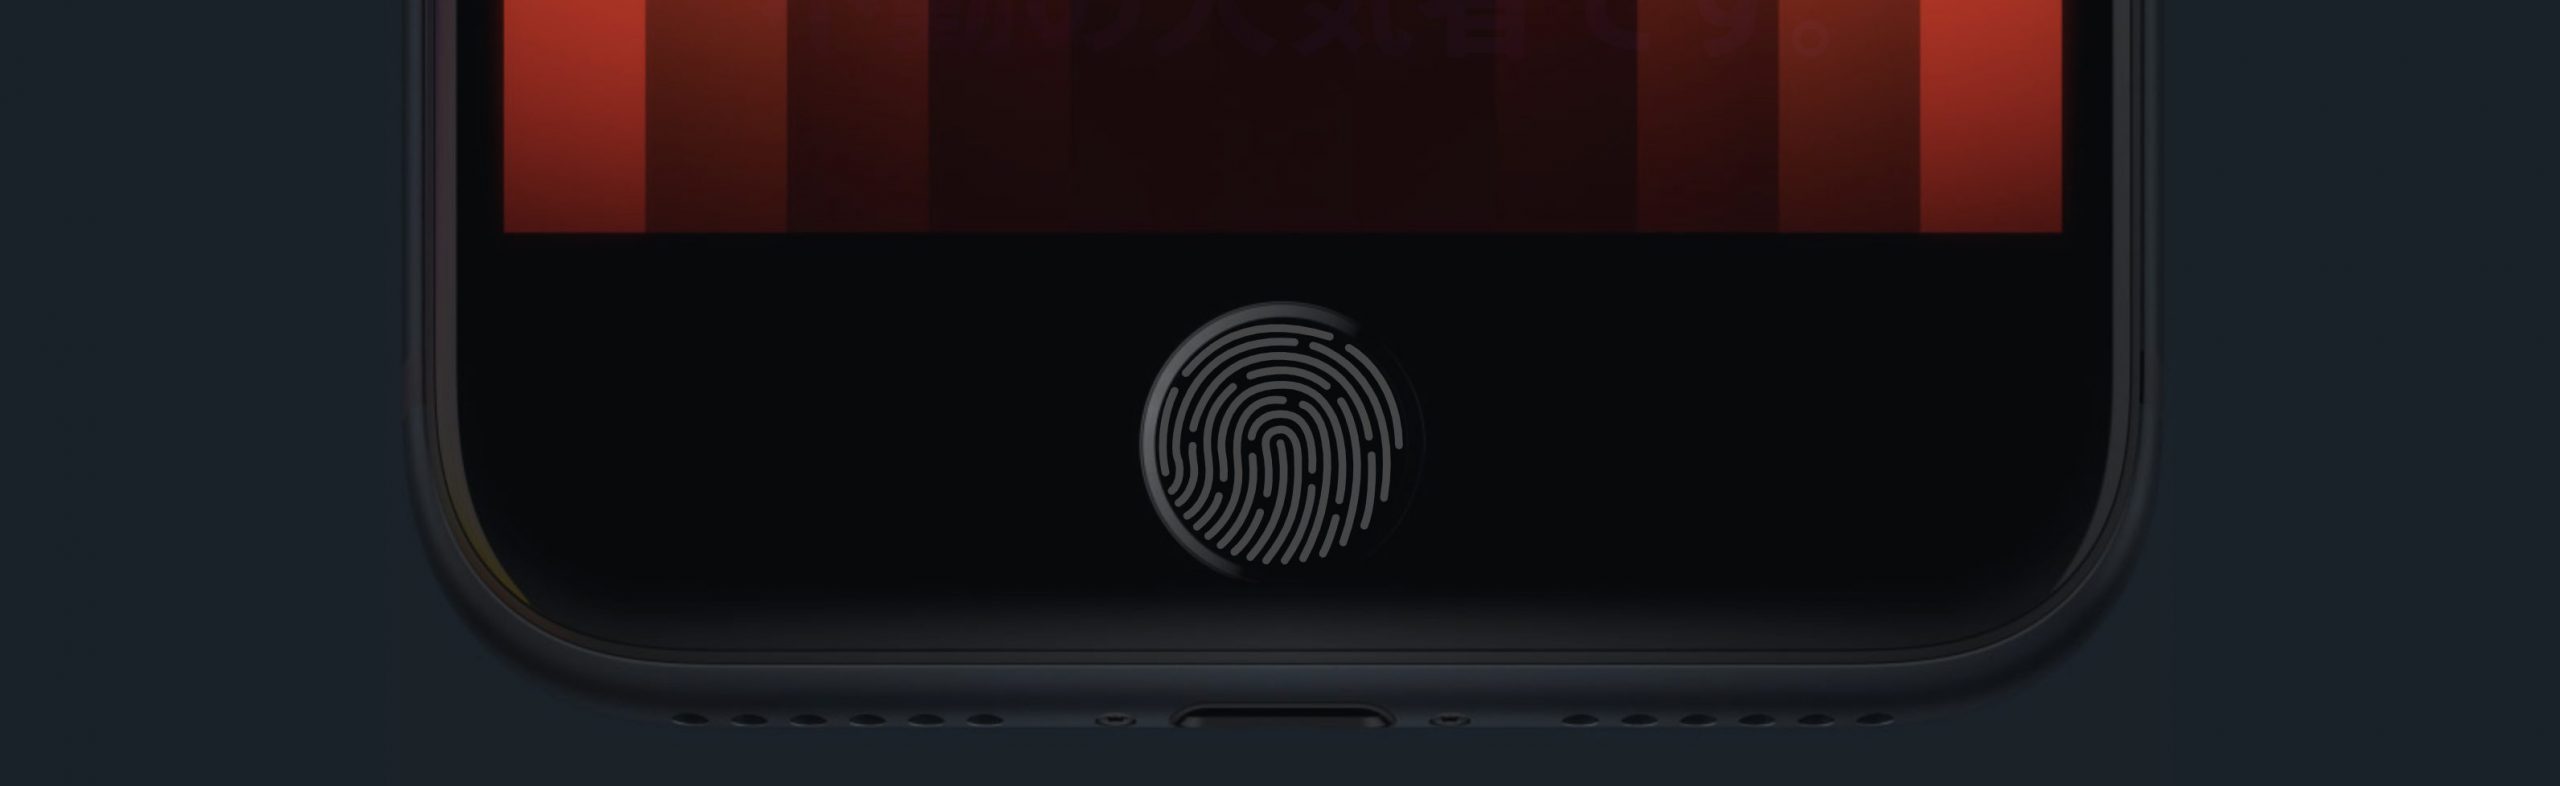 iPhone SE3のホームボタン式指紋認証